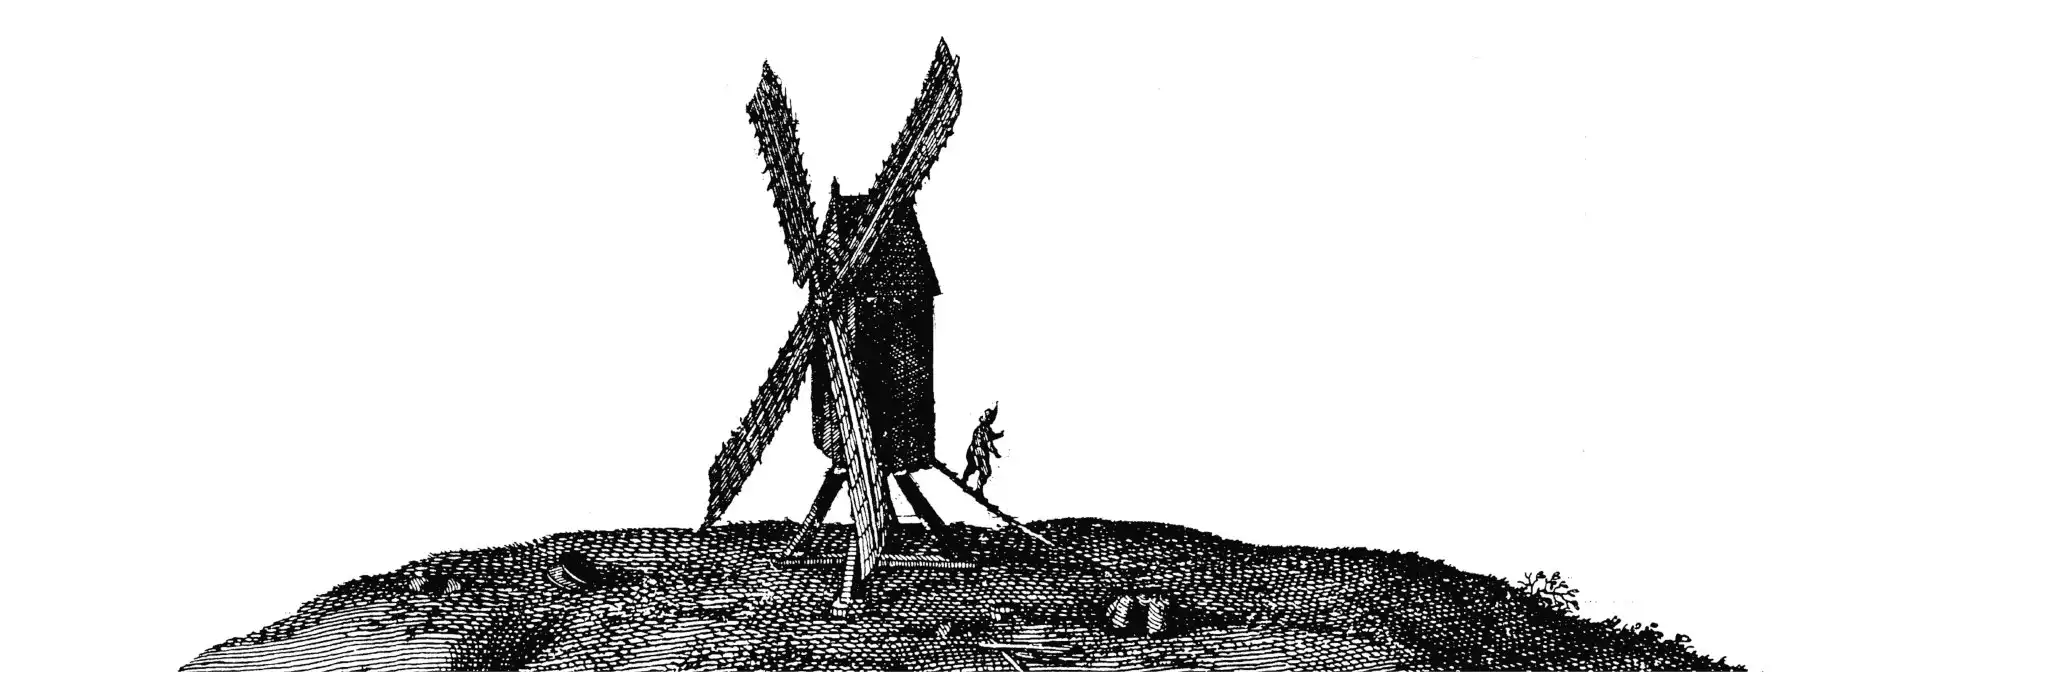 Mittelalterliche Windmühle, 1652